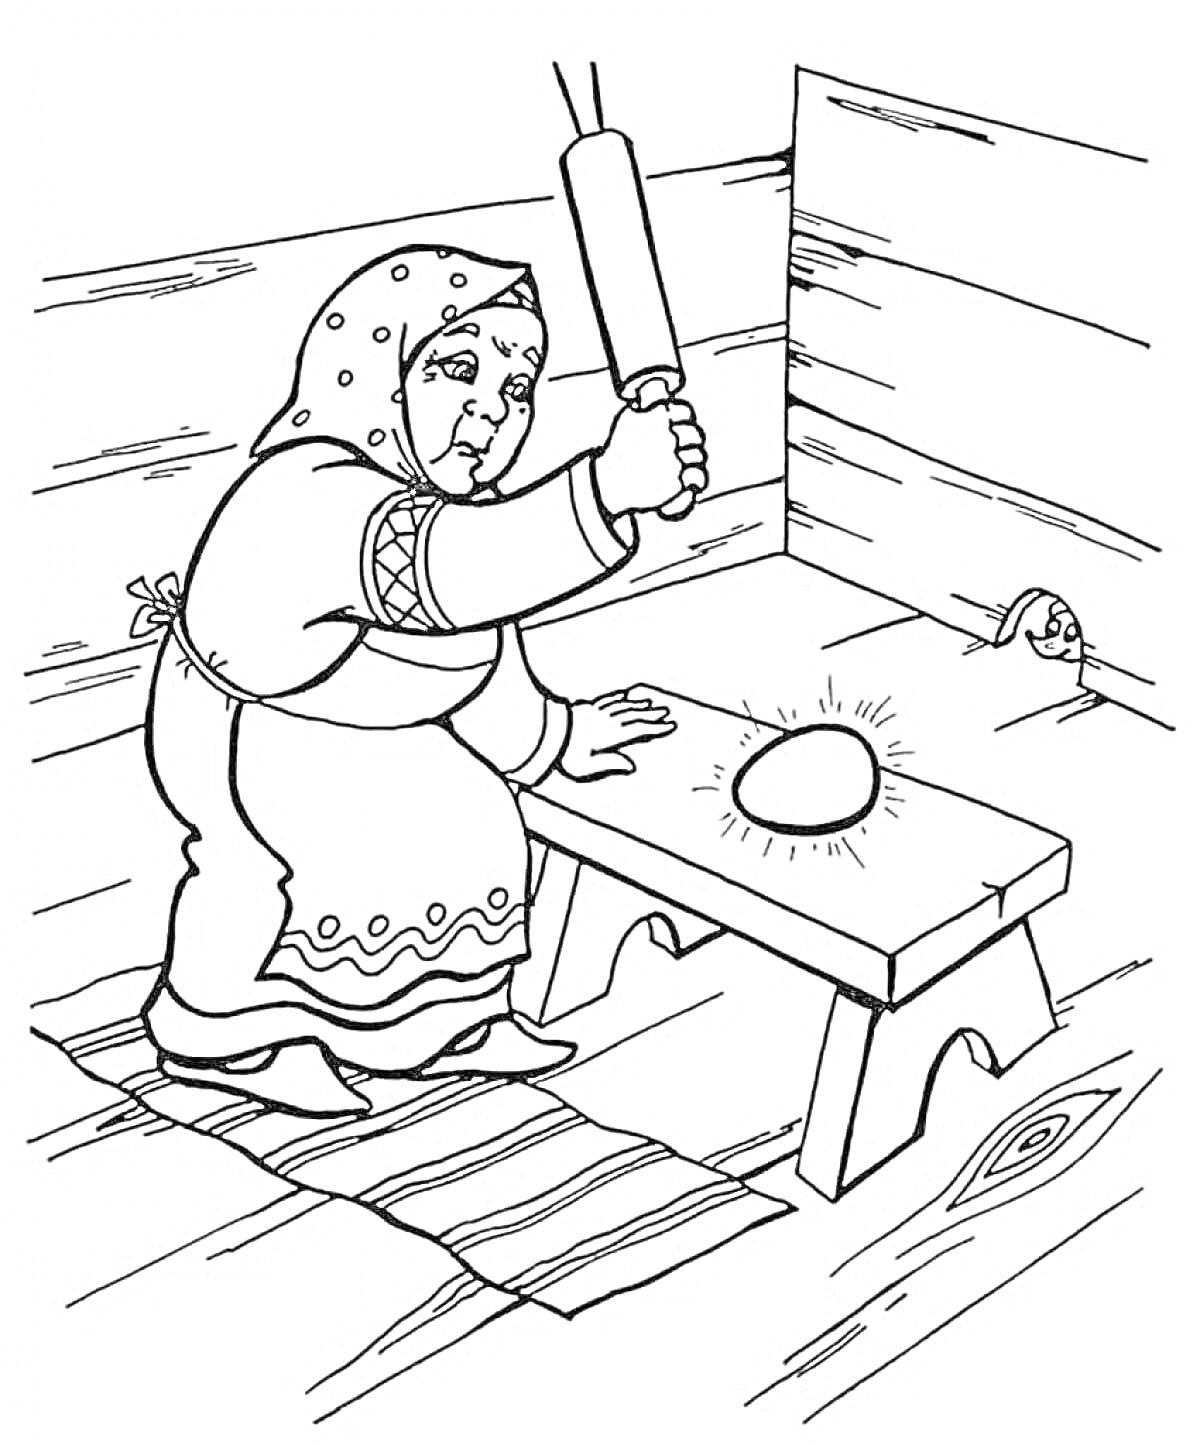 Раскраска Бабушка бьёт яйцо скалкой на столе в деревянном доме с мышкой